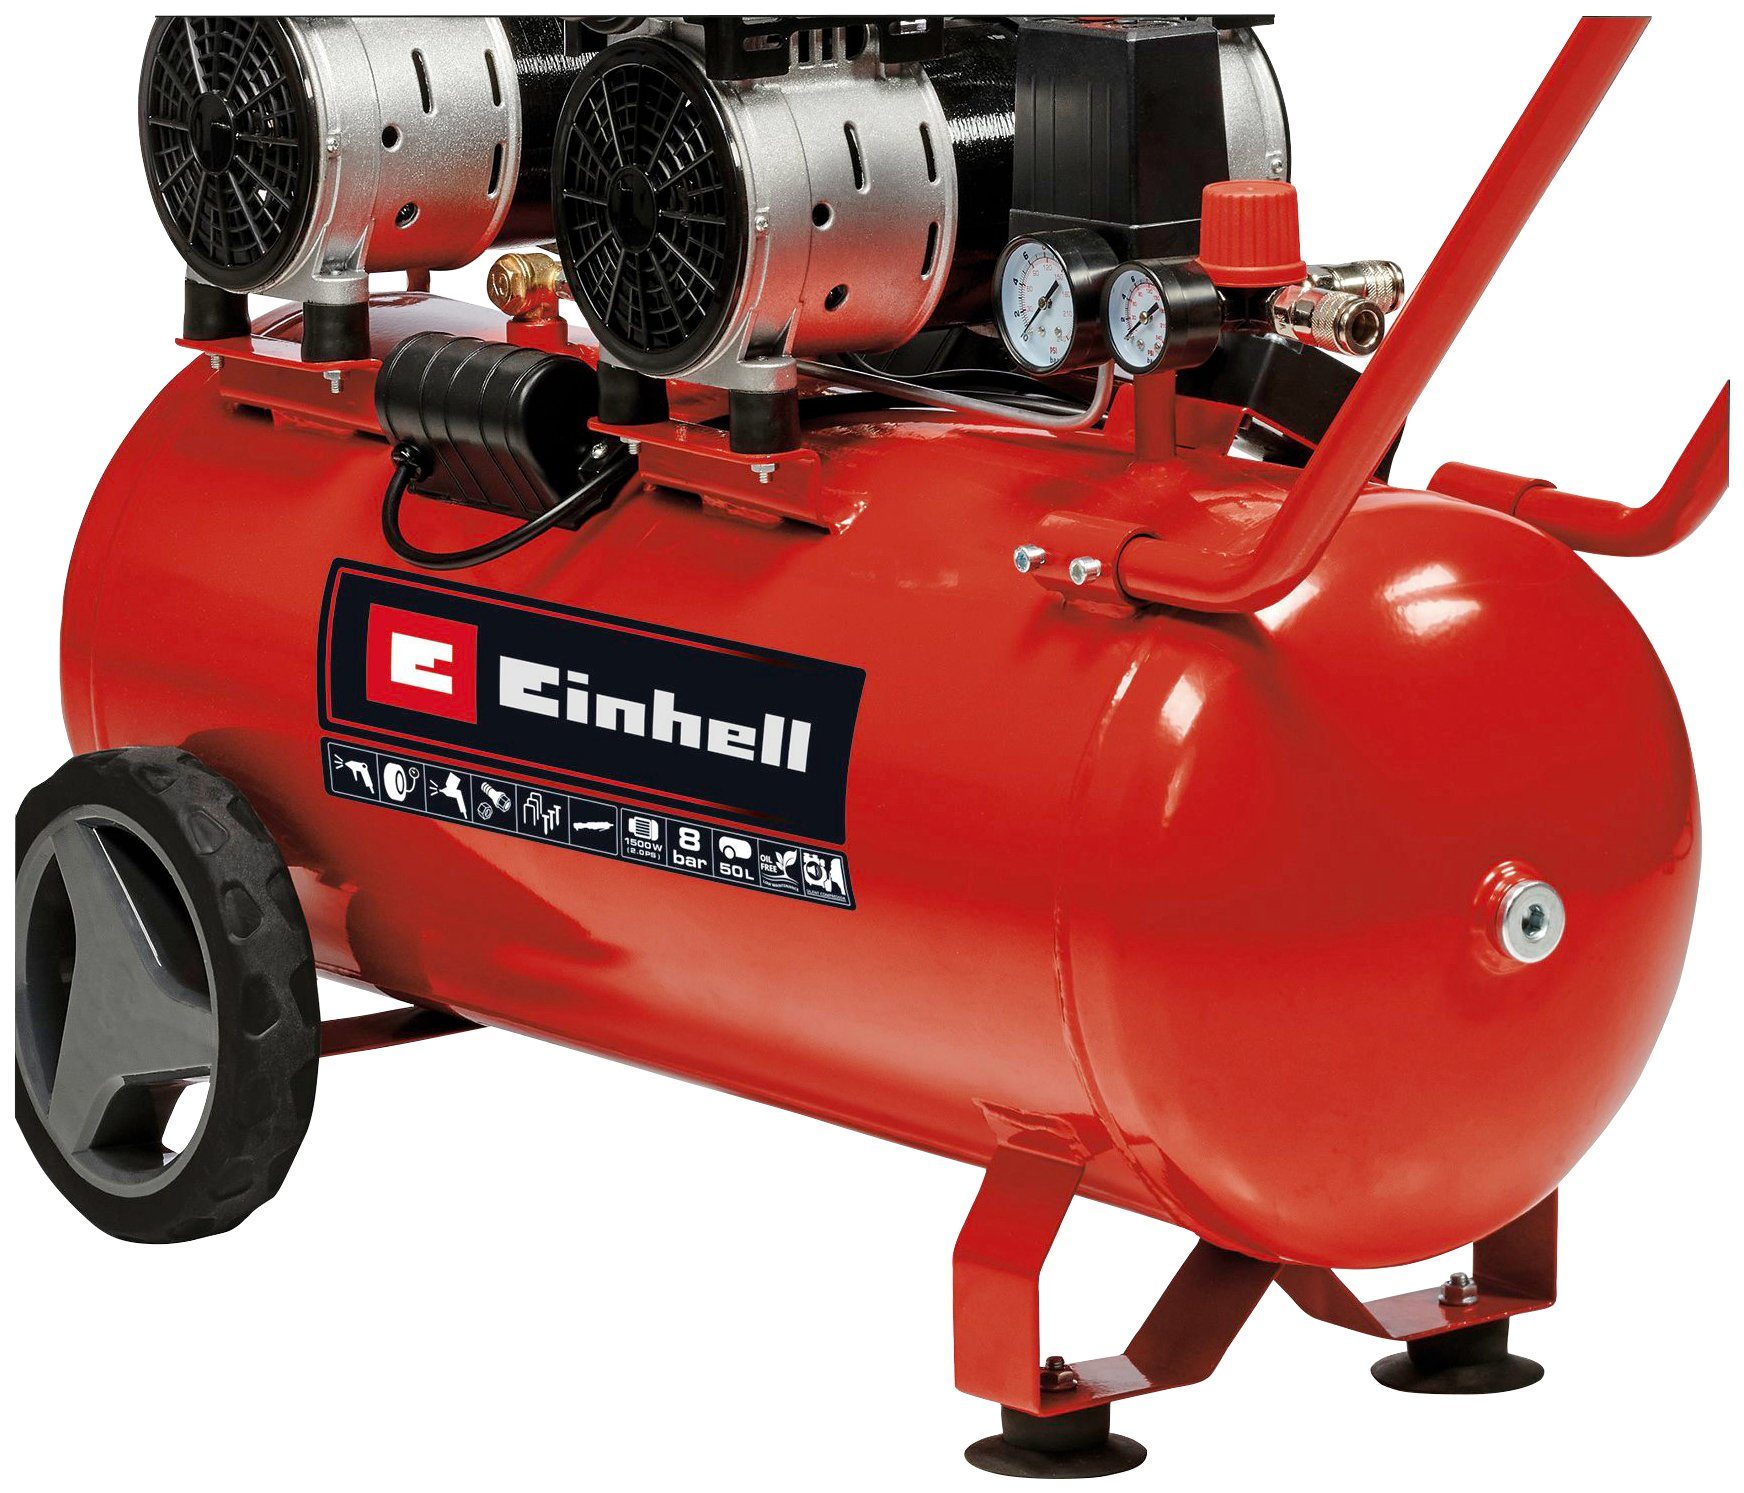 Einhell Kompressor TE-AC 50 1500 8 bar, 50 l Silent, max. W